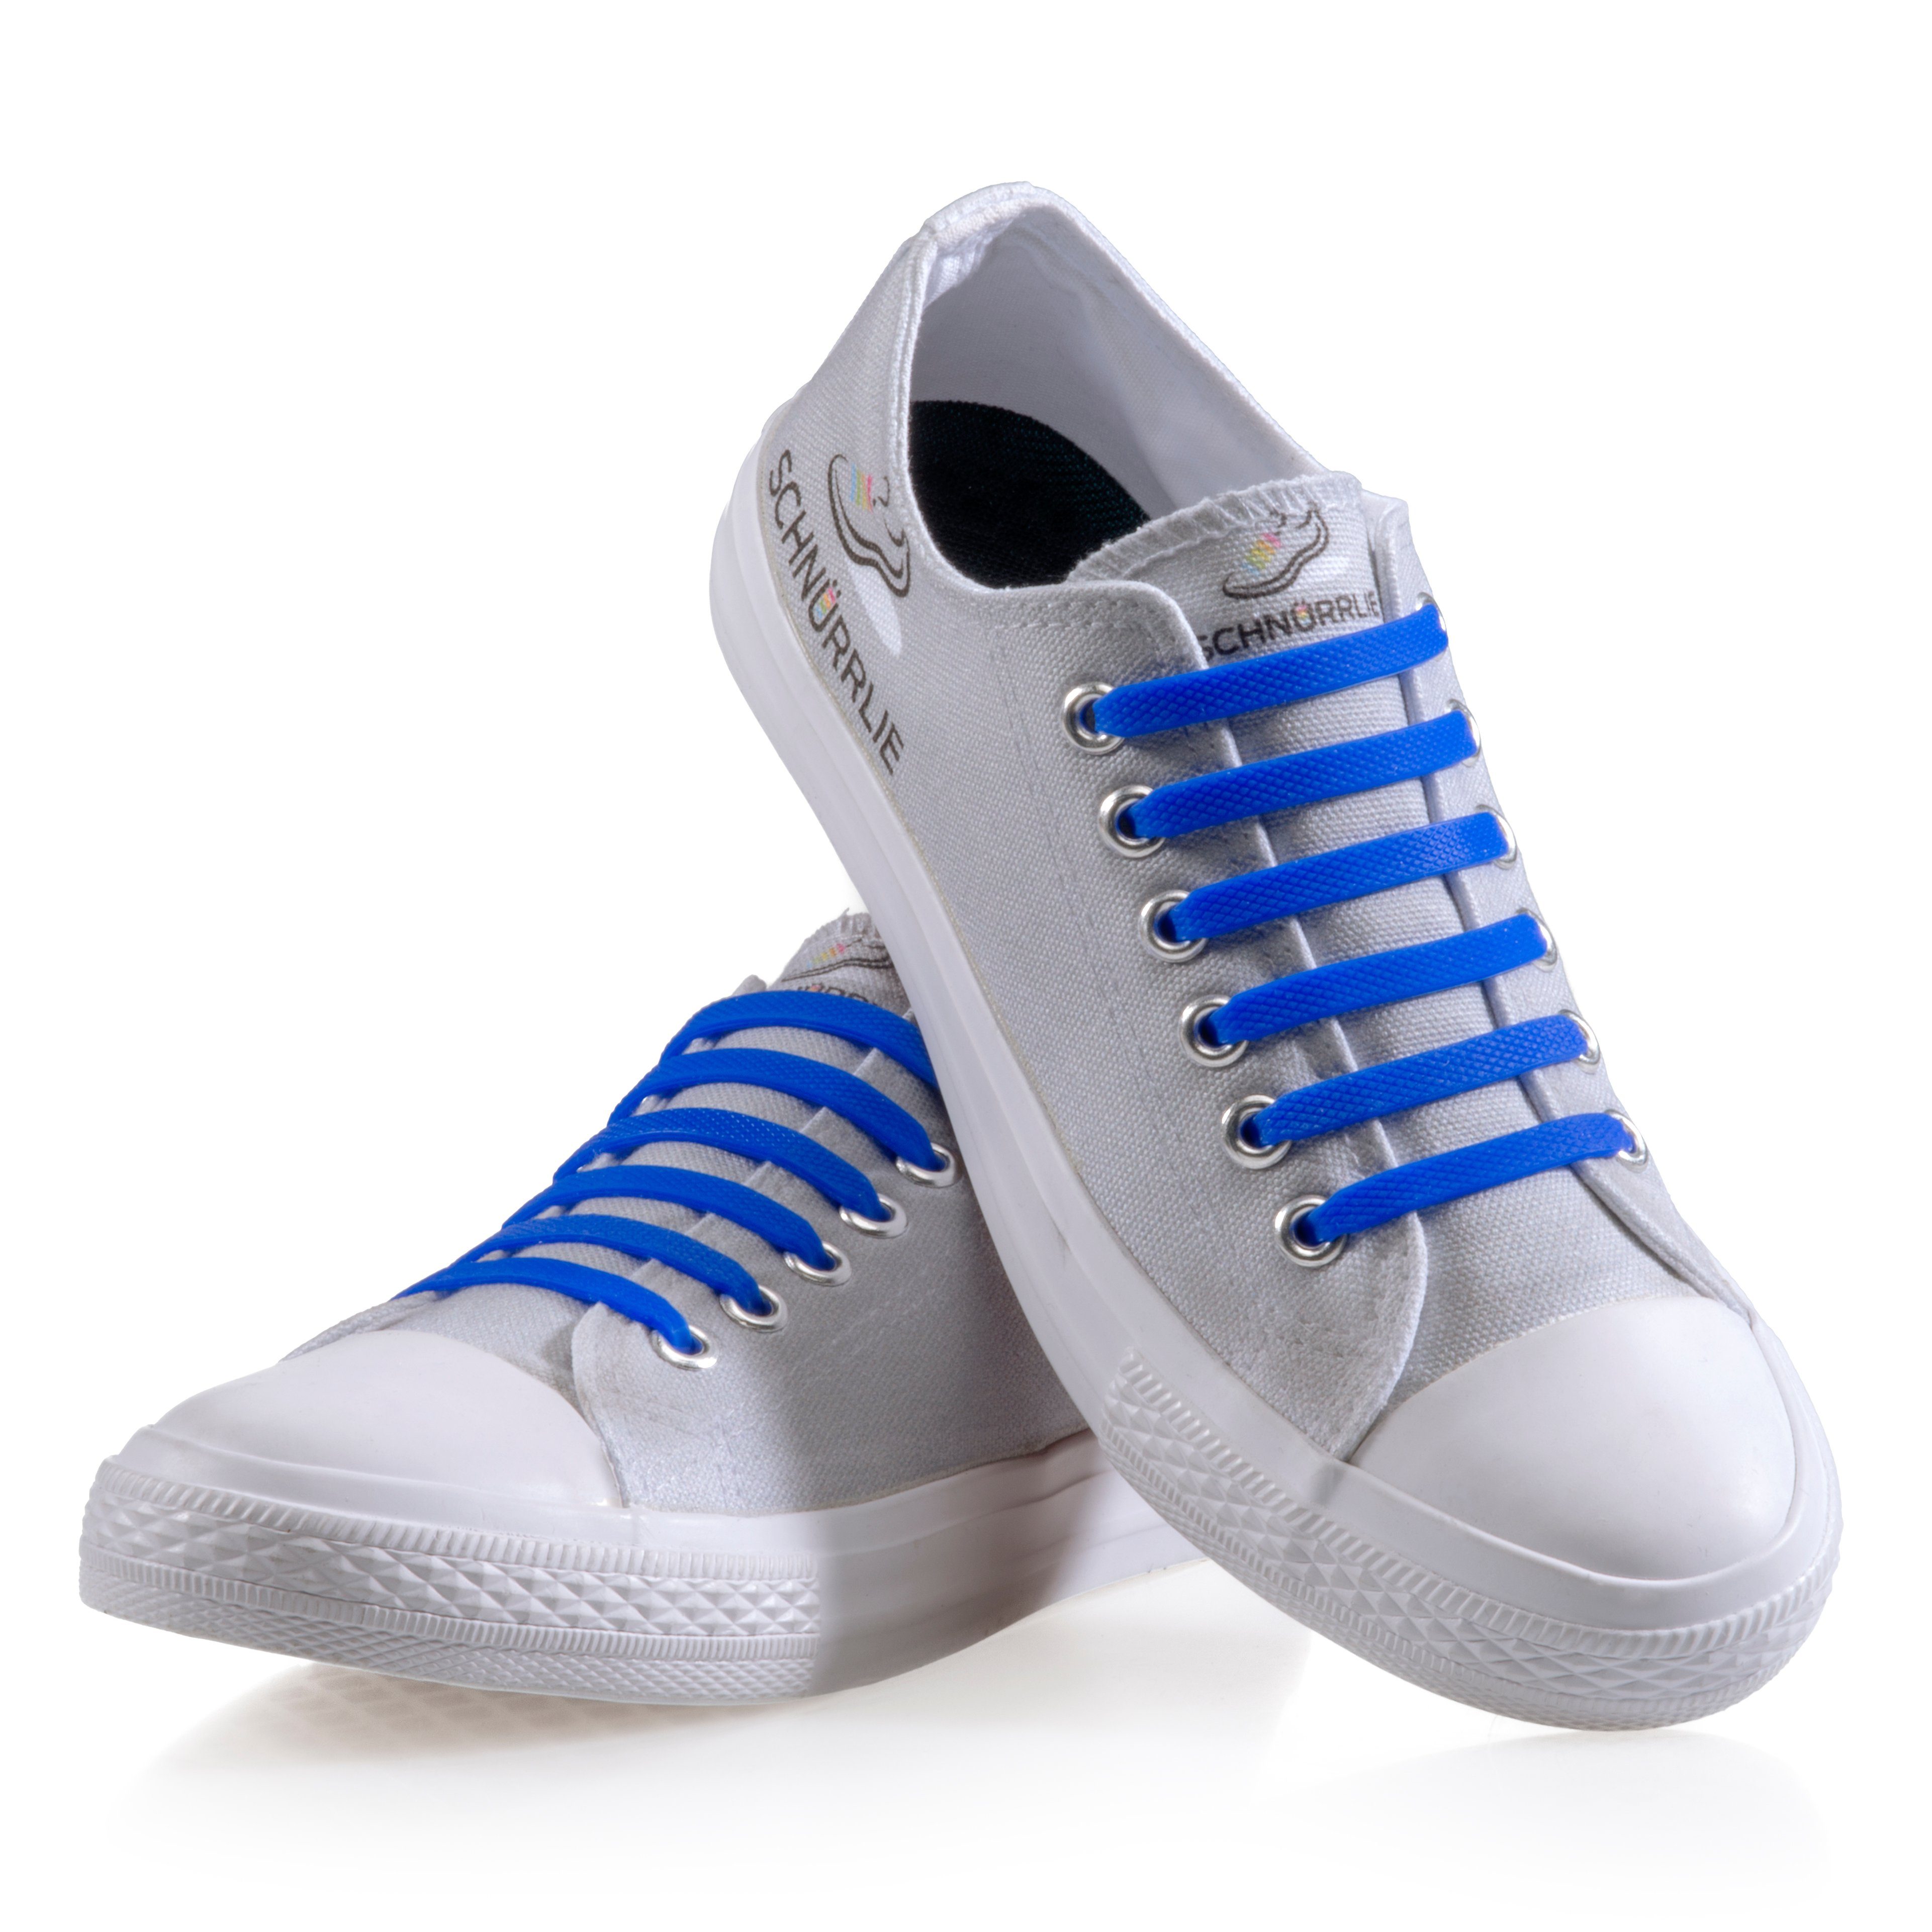 flache SCHNÜRRLIE Laces, uvm für Sportschuhe Blau elastische Sneaker, Silikon - Turnschuhe, Schnürsenkel Schnürbänder